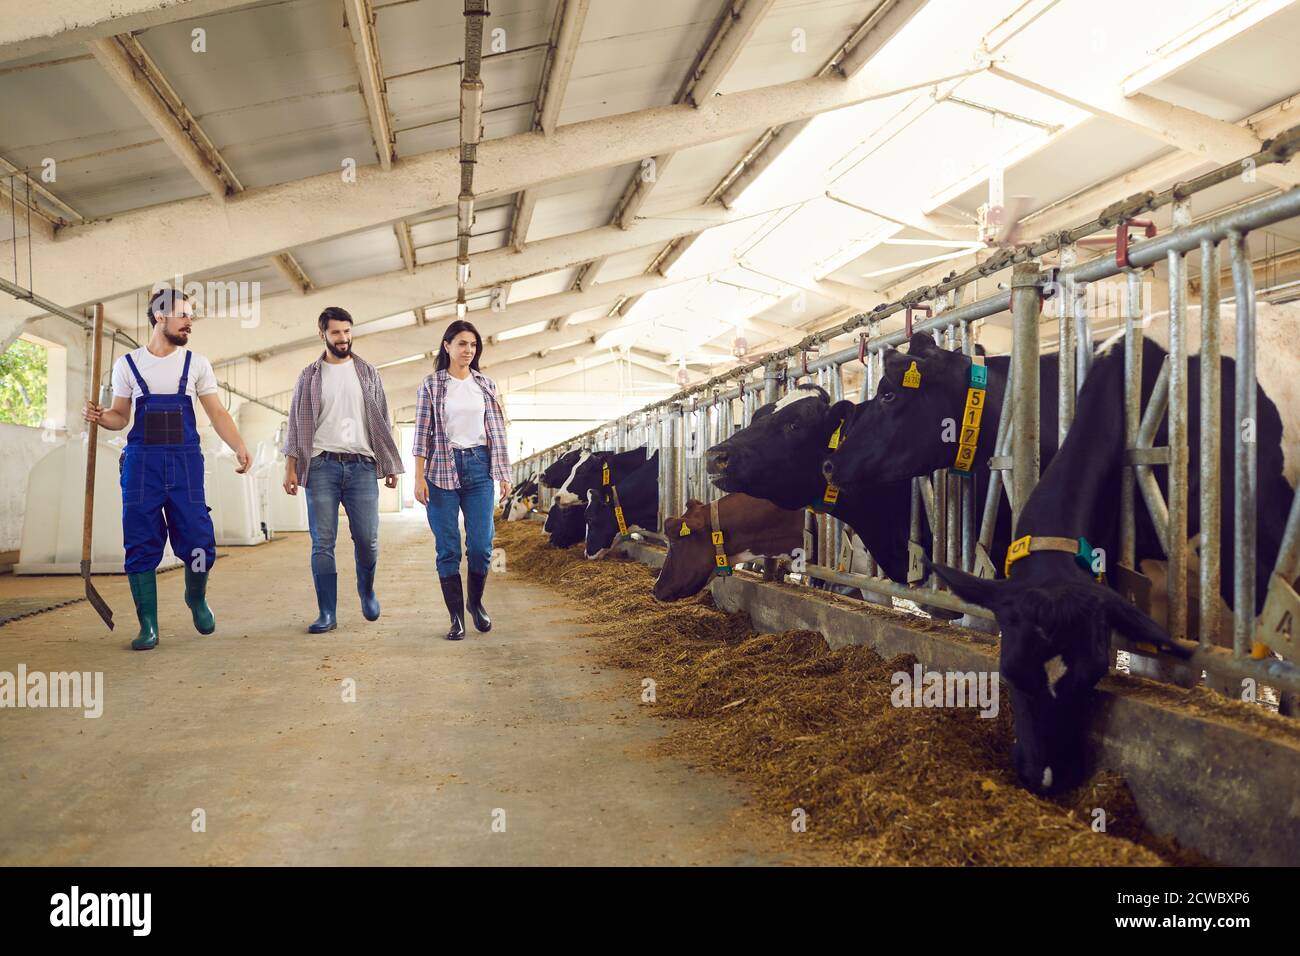 Milchvieharbeiter gehen entlang Ställe mit Fütterung Kühe, Überprüfung der Lebensbedingungen der Tiere Stockfoto